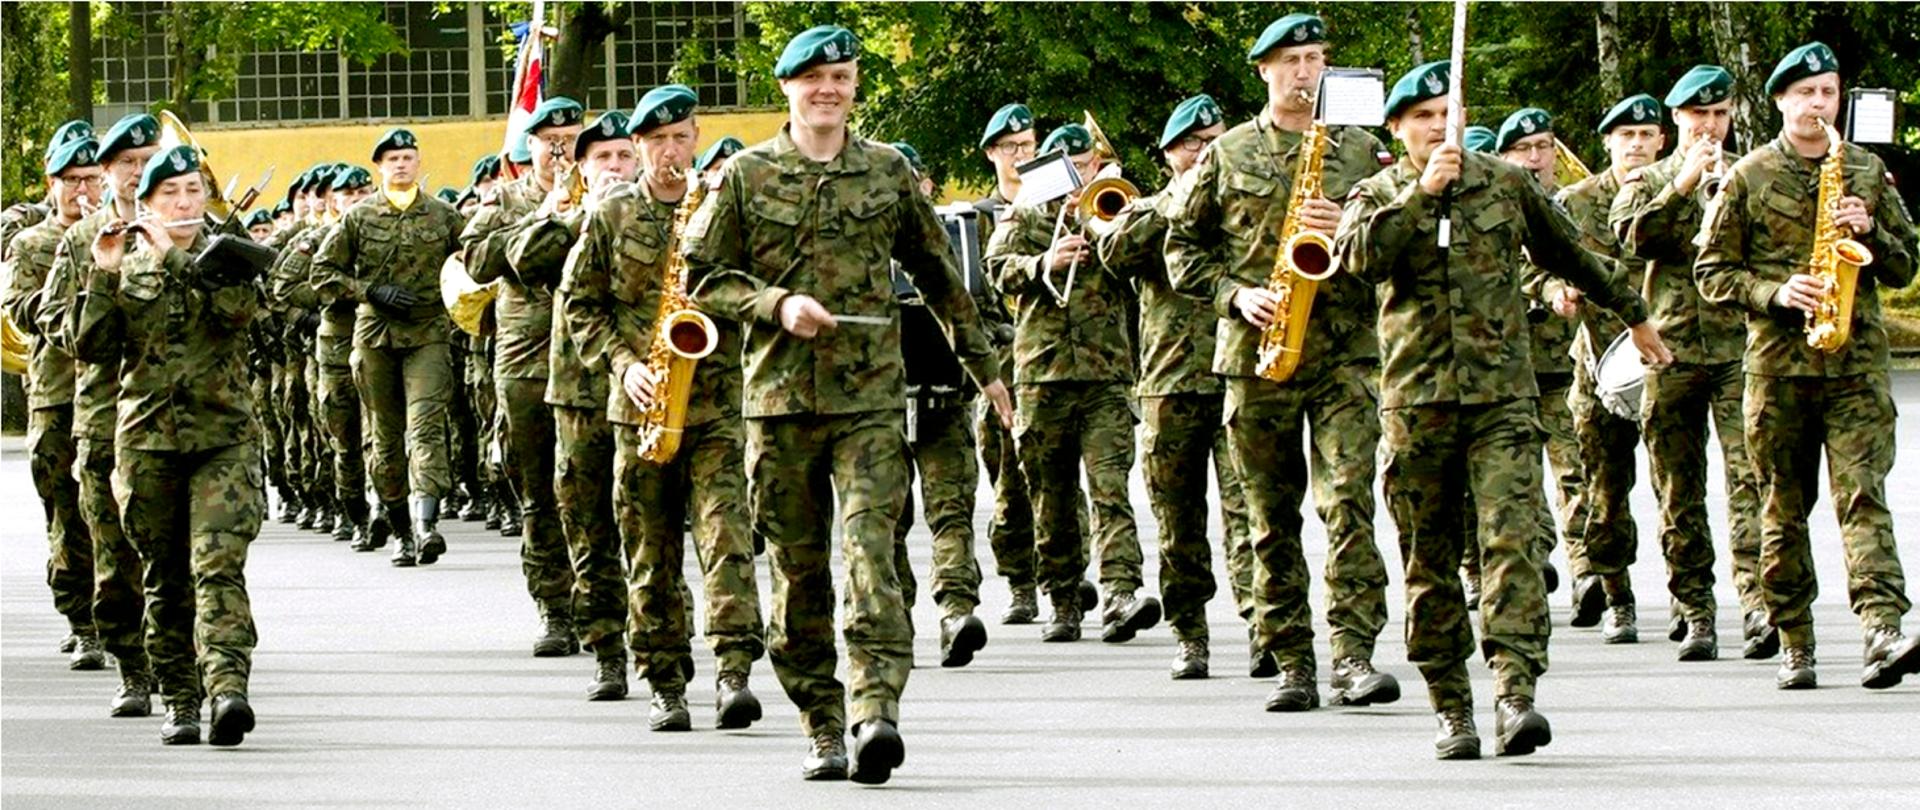 Zdjęcie przedstawia maszerującą orkiestrę wojskową